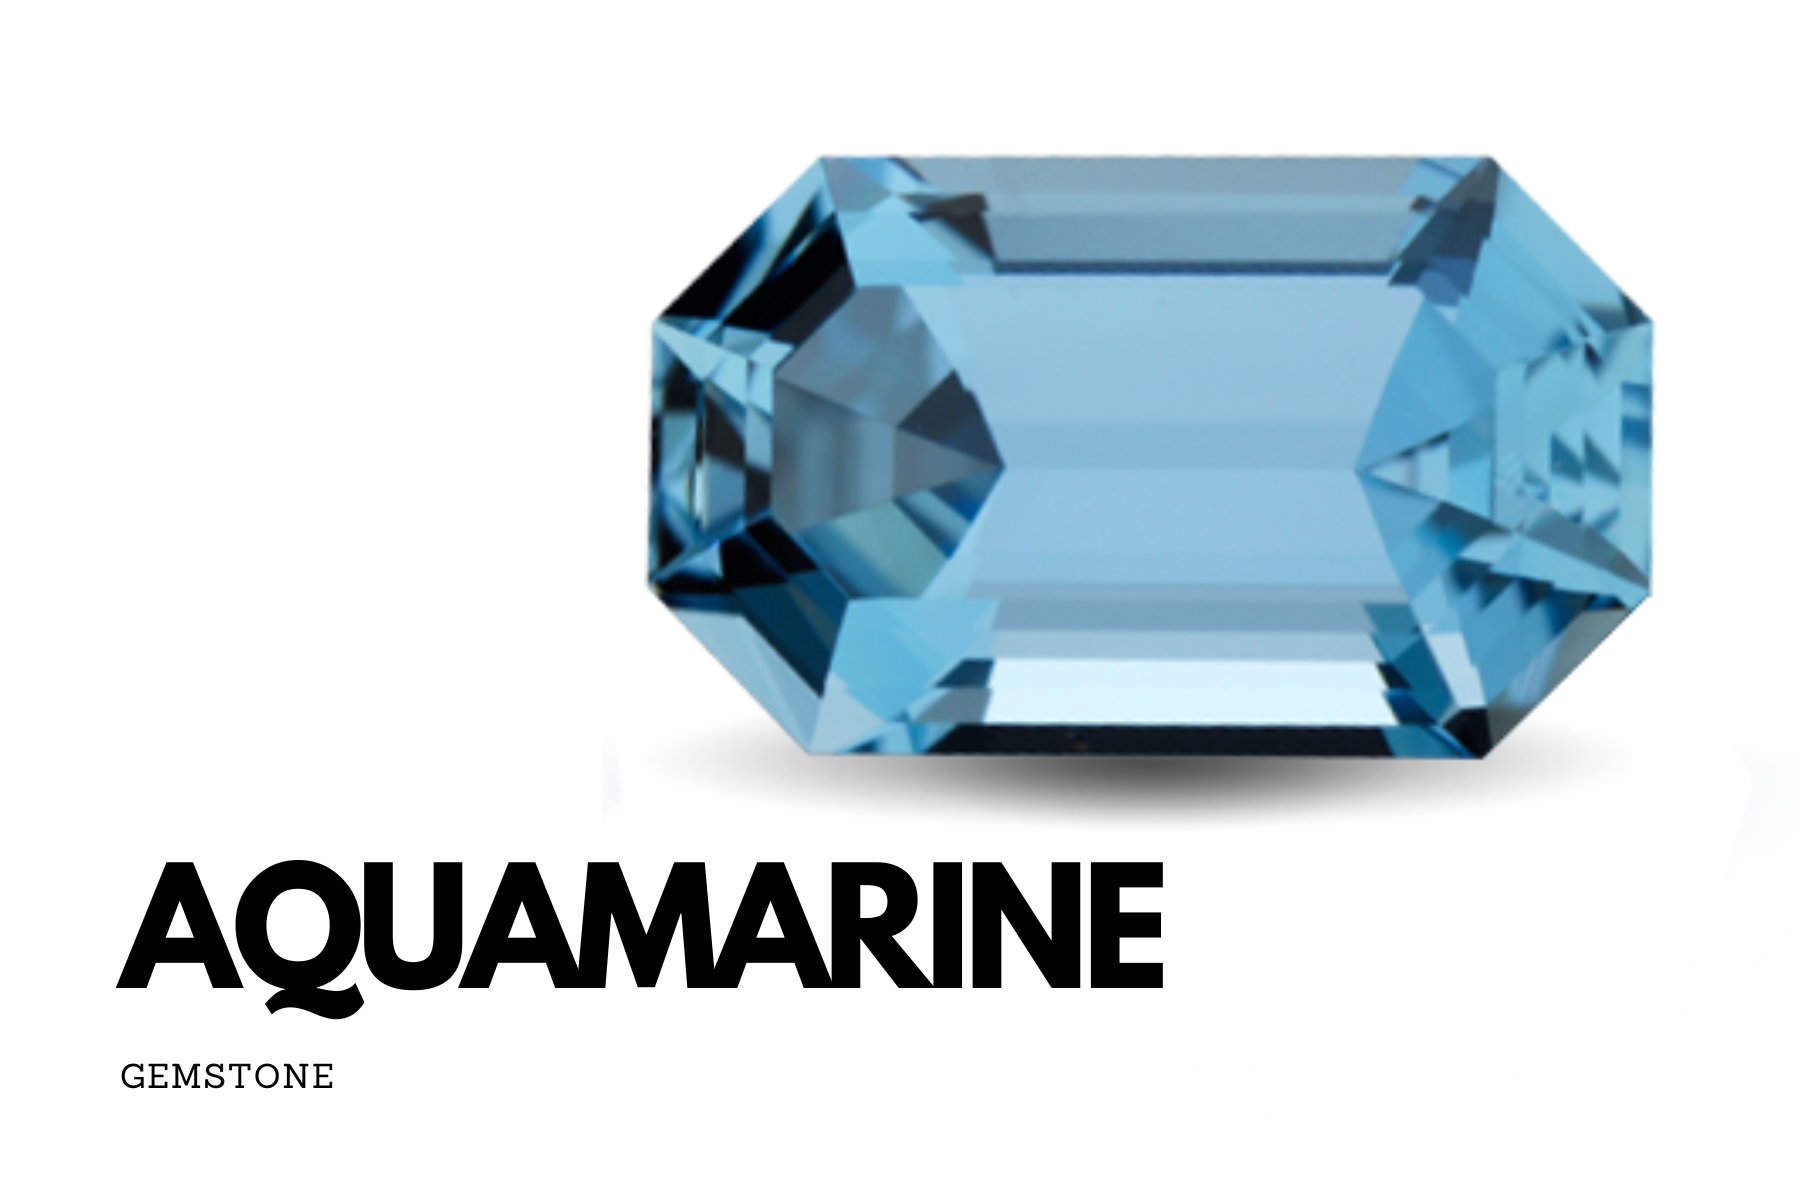 Octagonal aquamarine stone